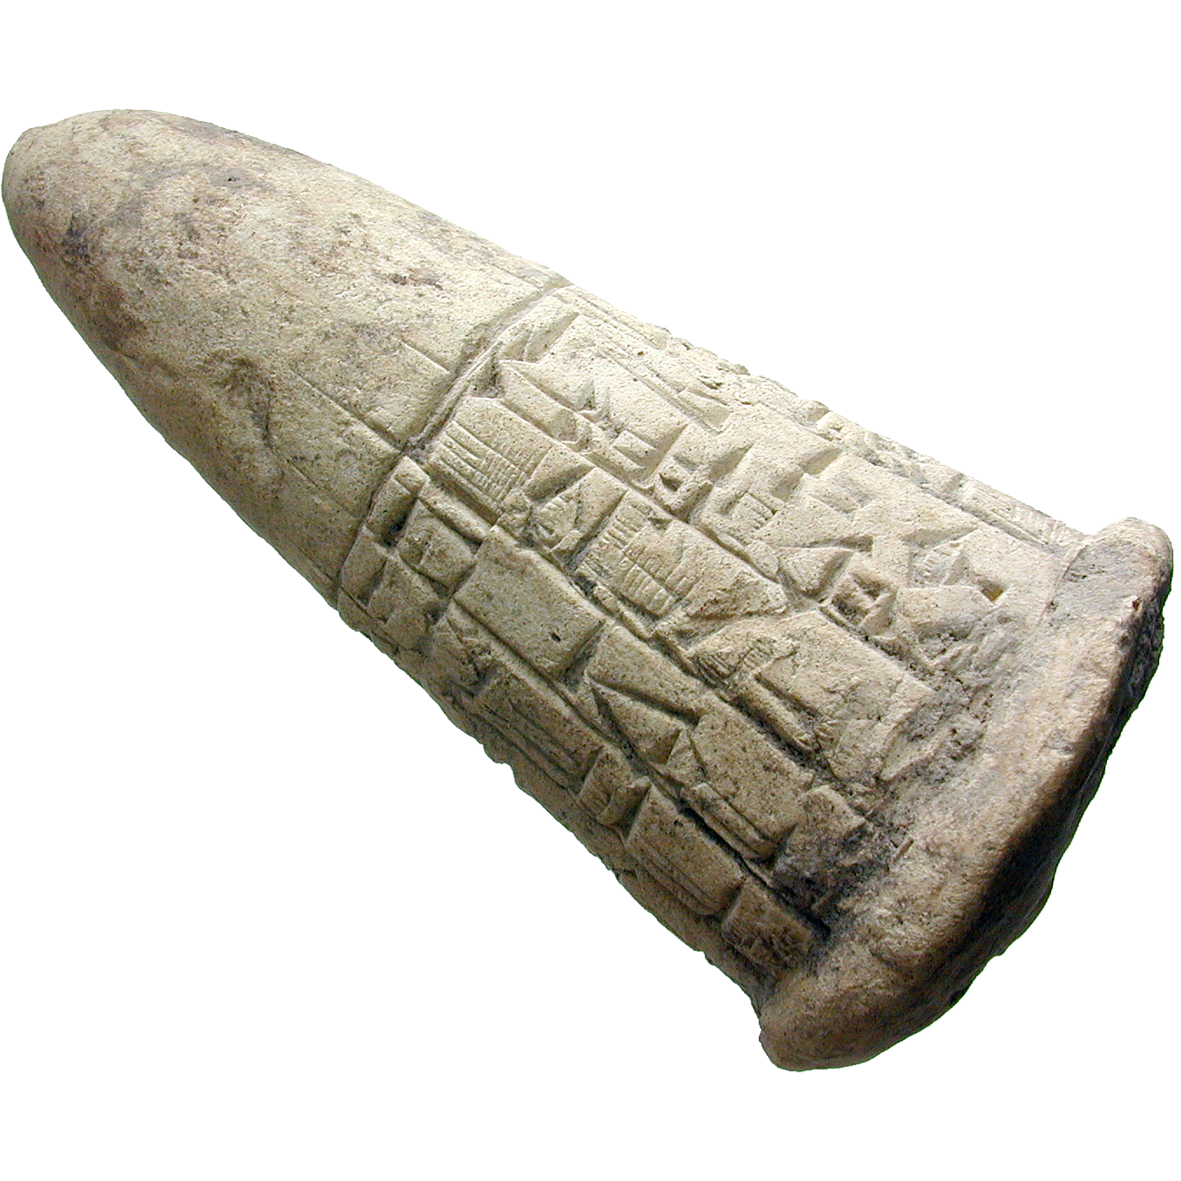 Mesopotamien, konischer Gründungsnagel aus Ton (obverse)